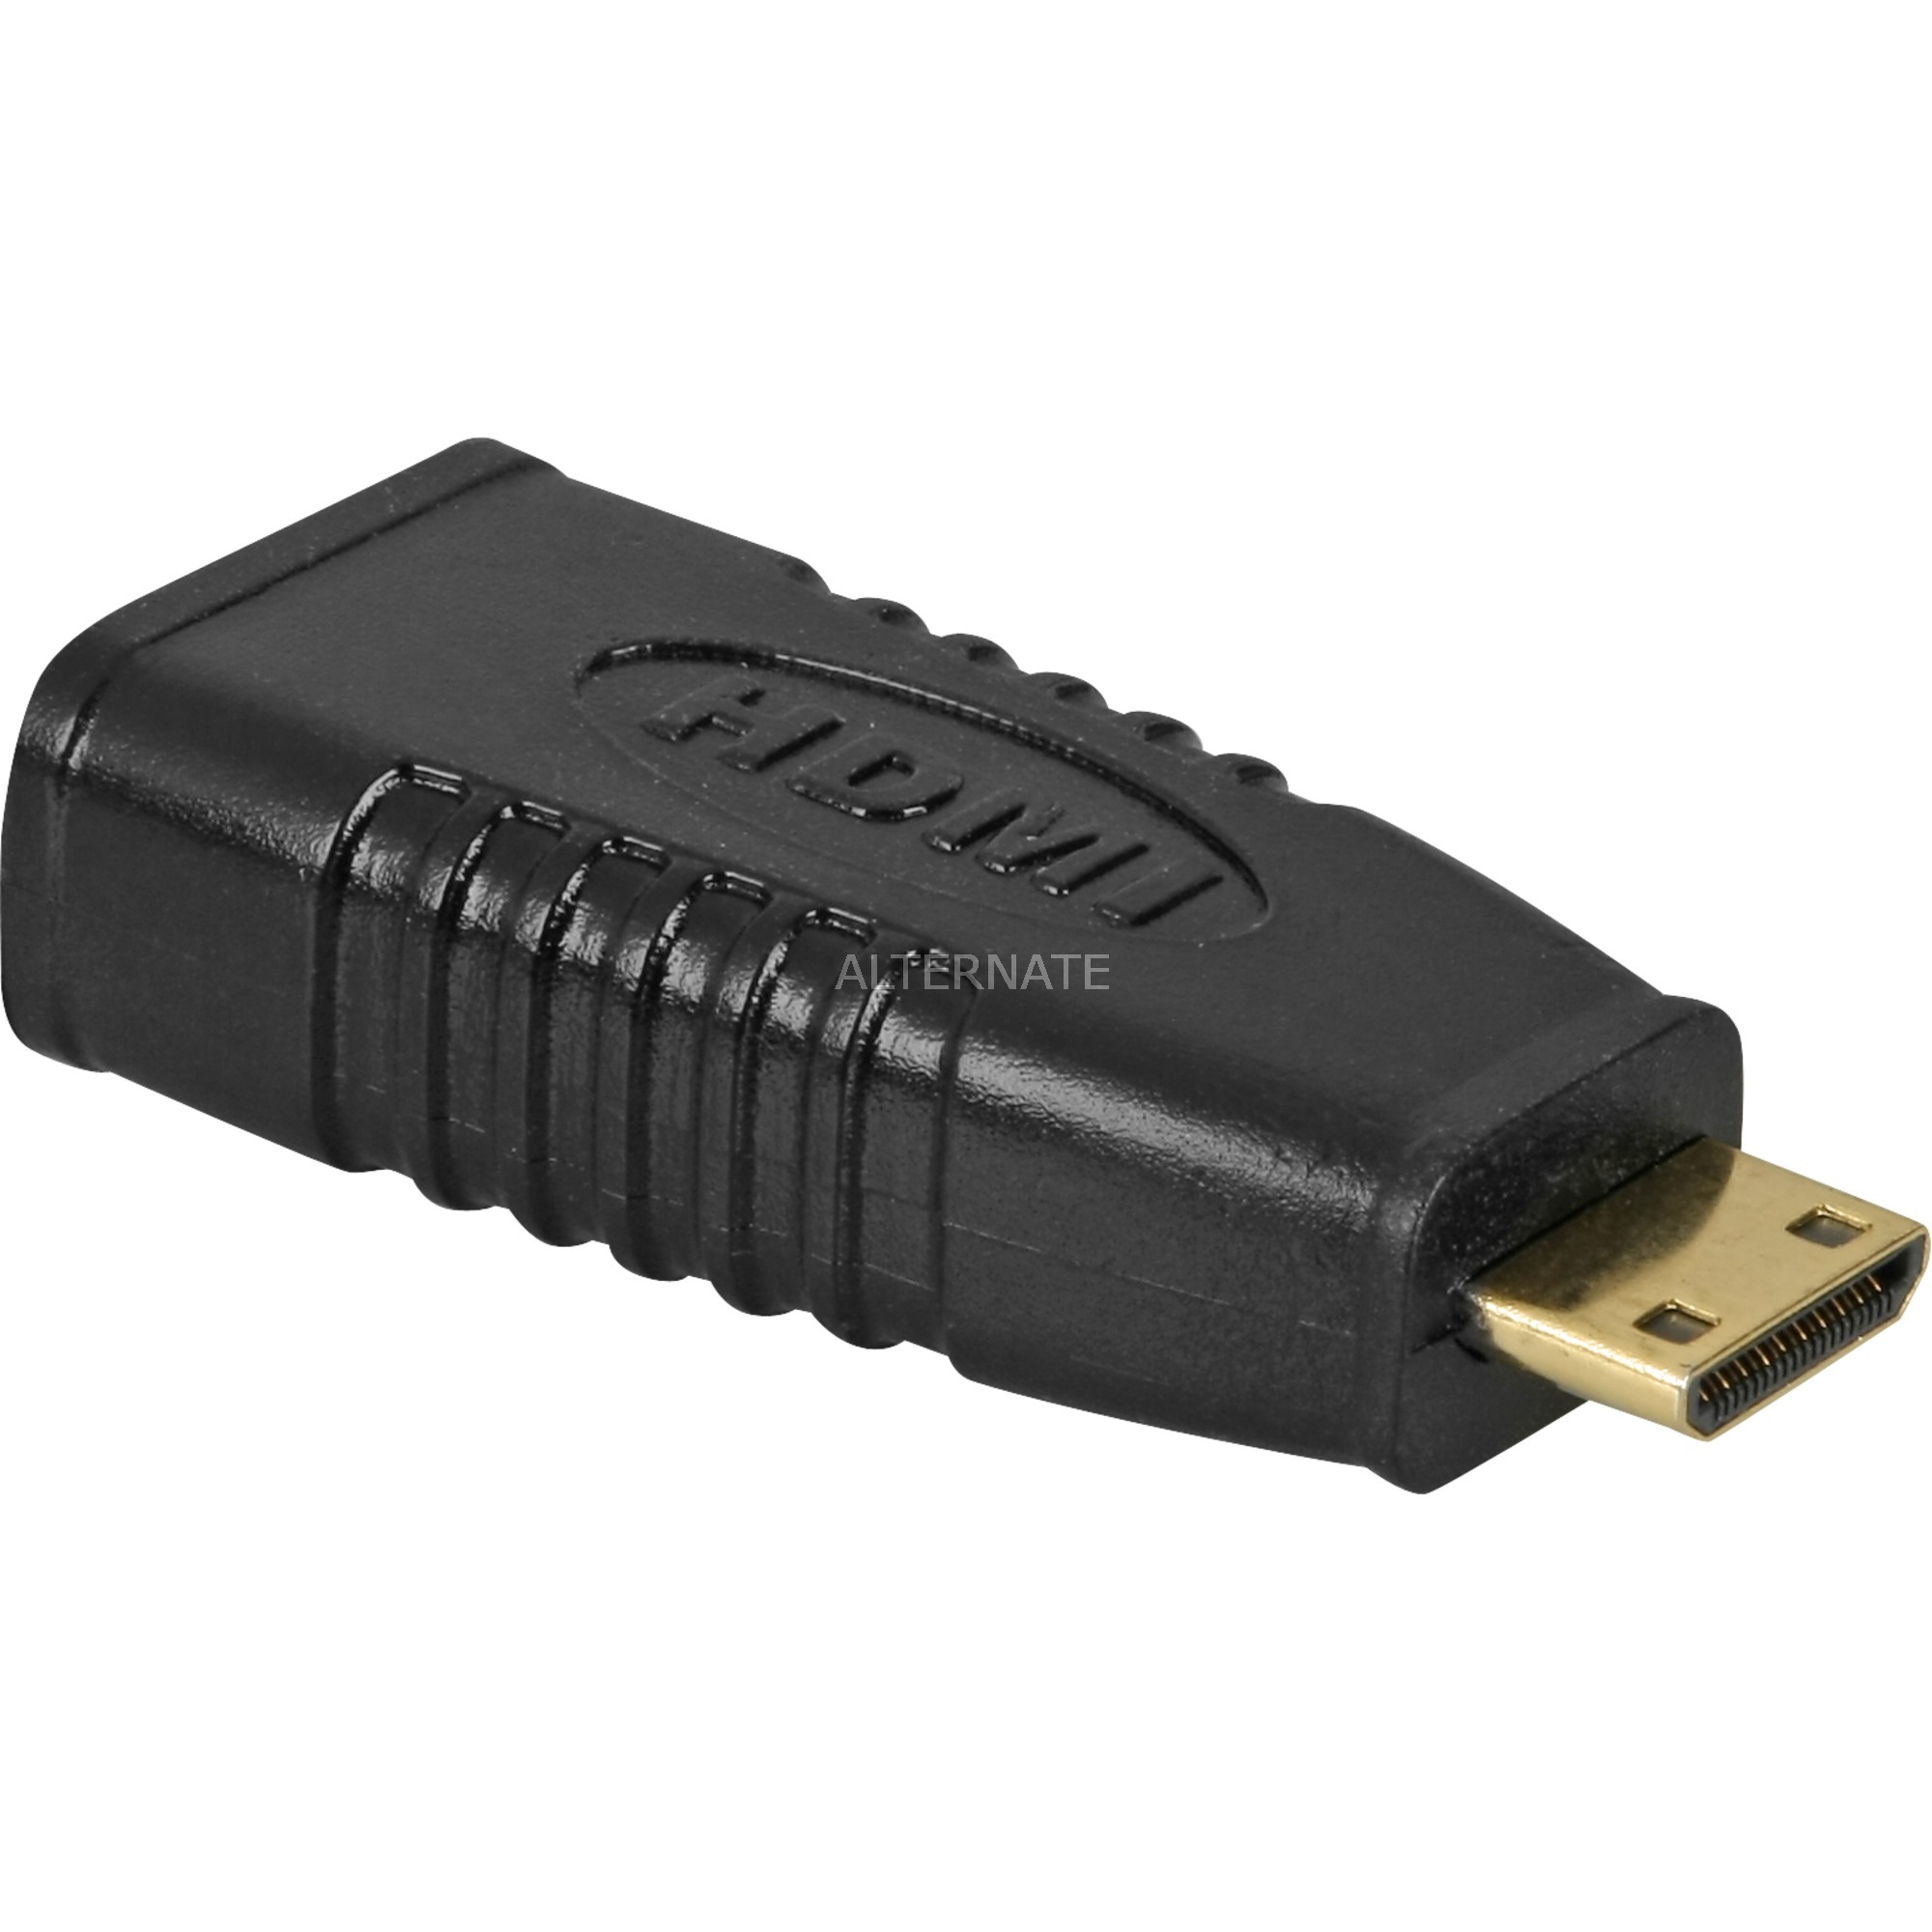 Image of Alternate - Adapter HDMI auf Mini-HDMI online einkaufen bei Alternate